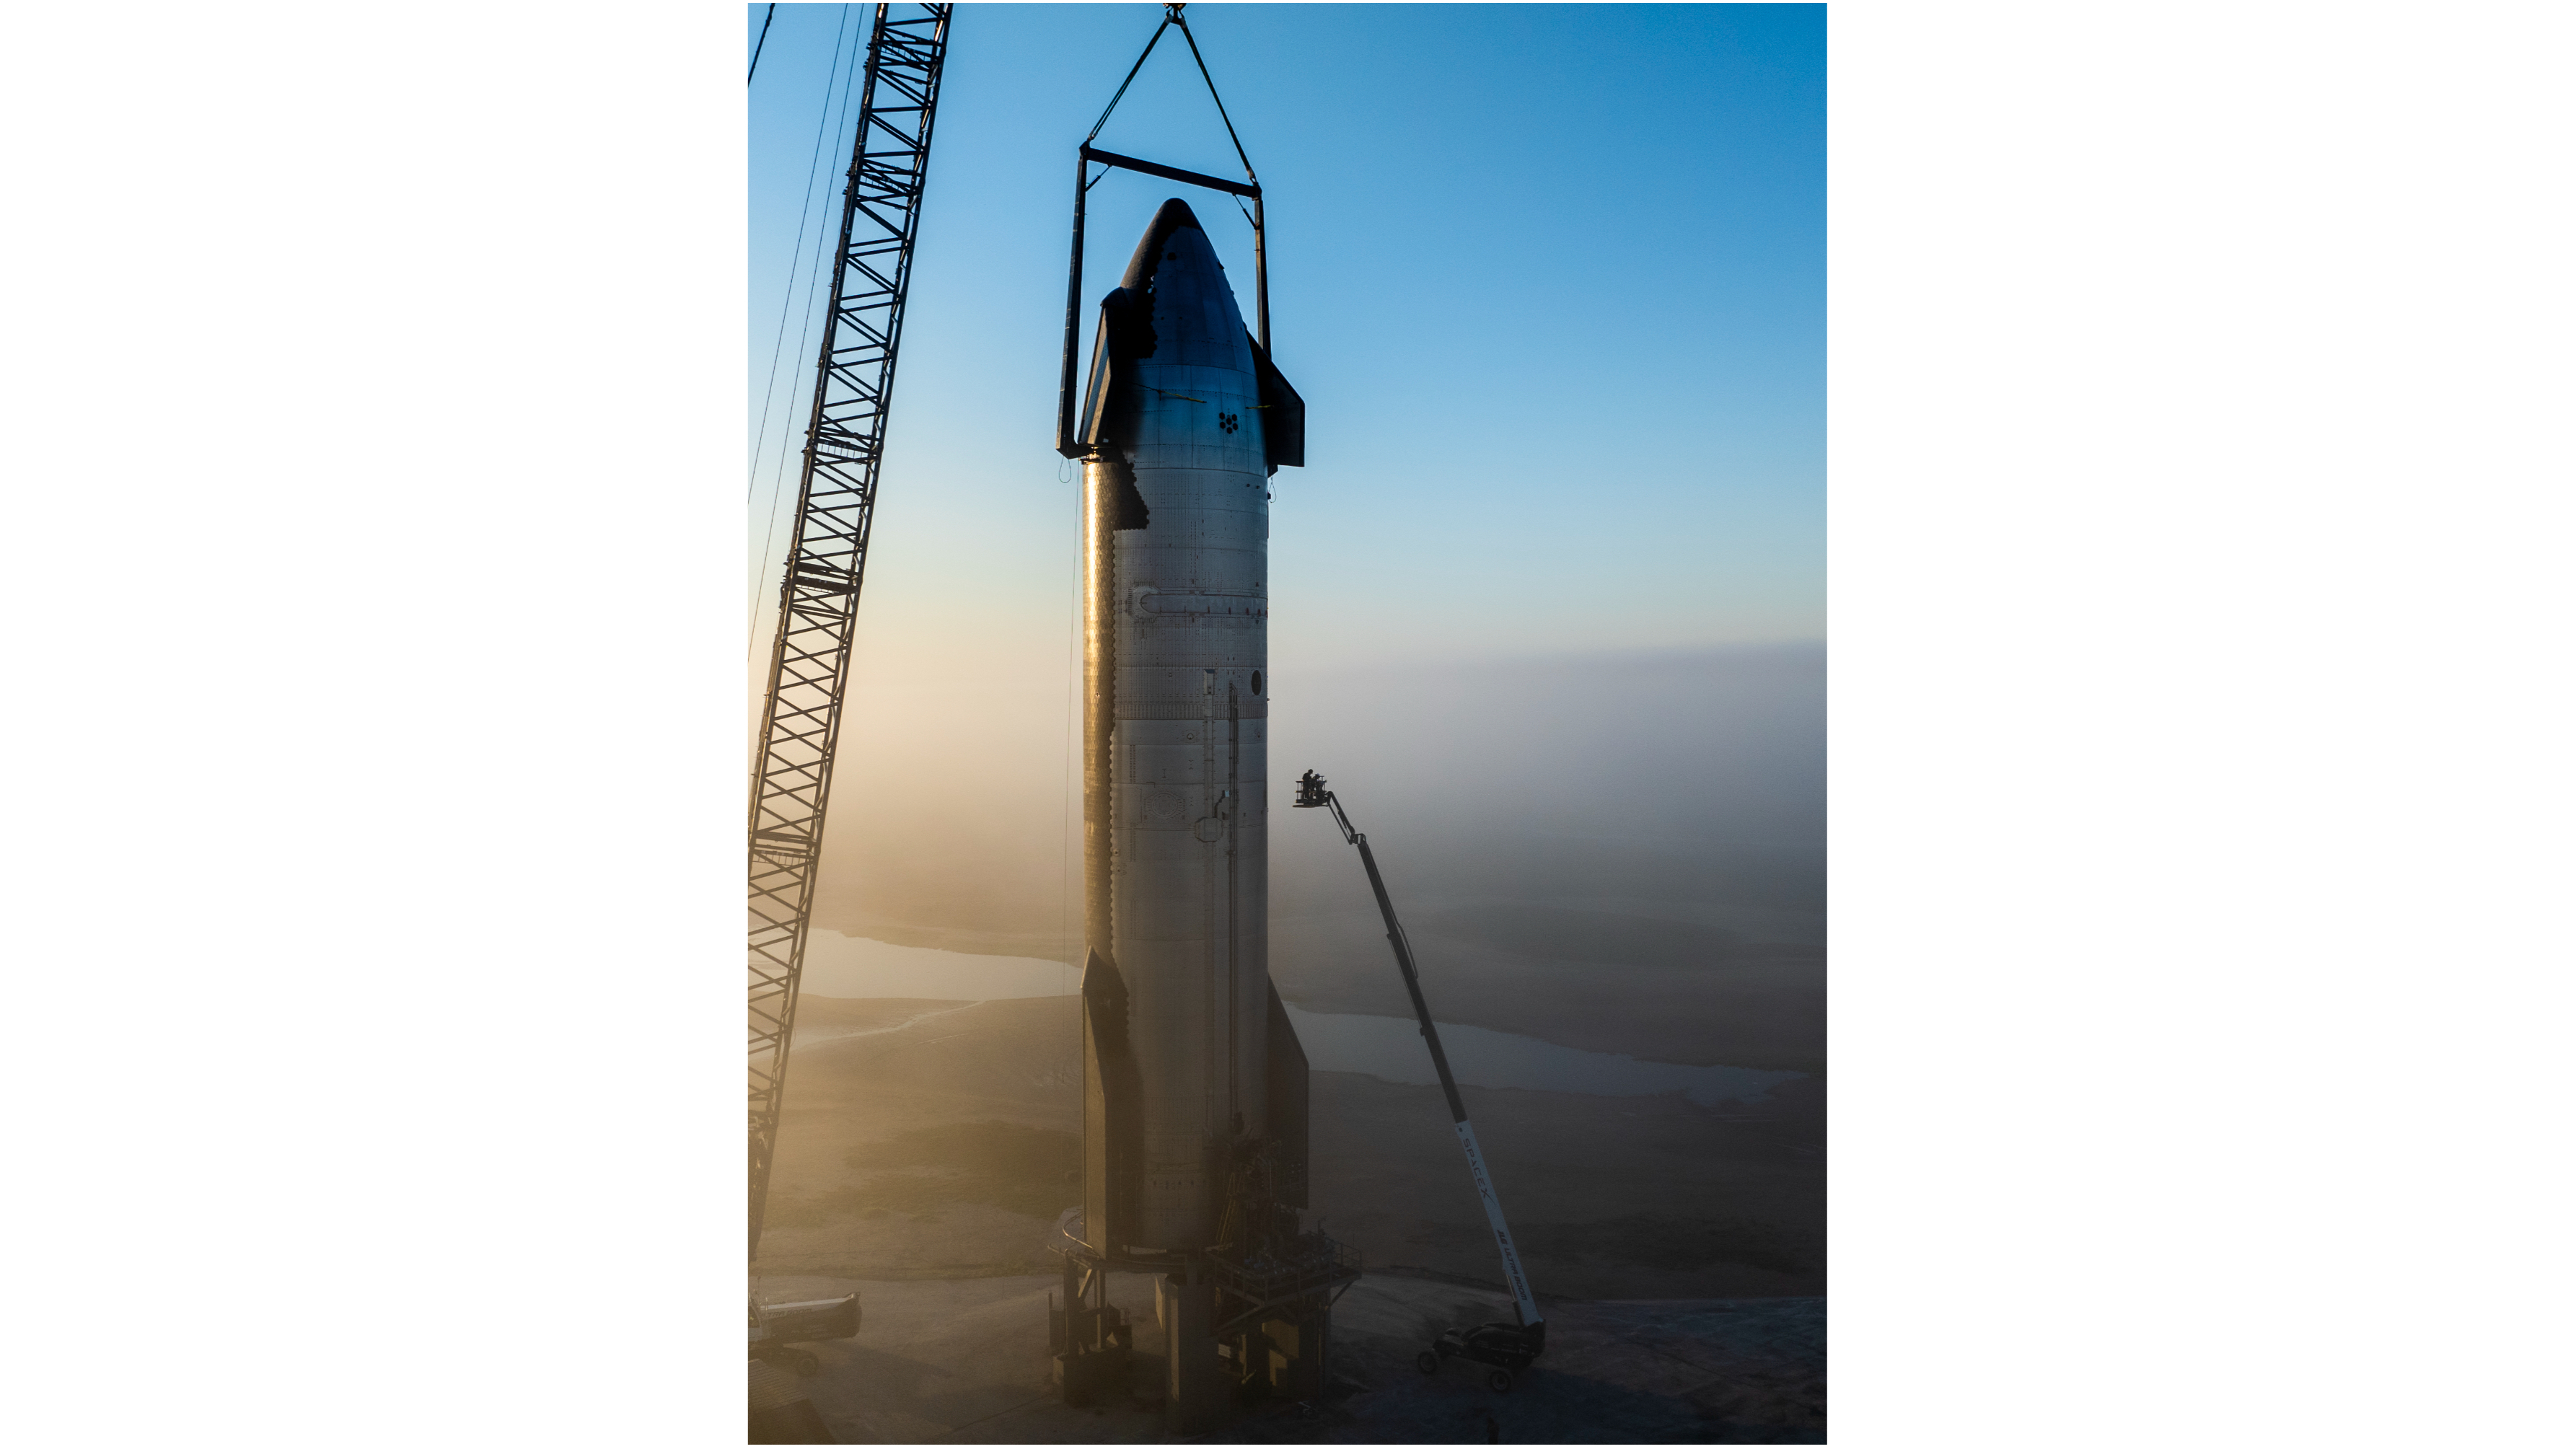 SpaceX traslada su próxima nave espacial al sitio de pruebas antes del cuarto vuelo (fotos)